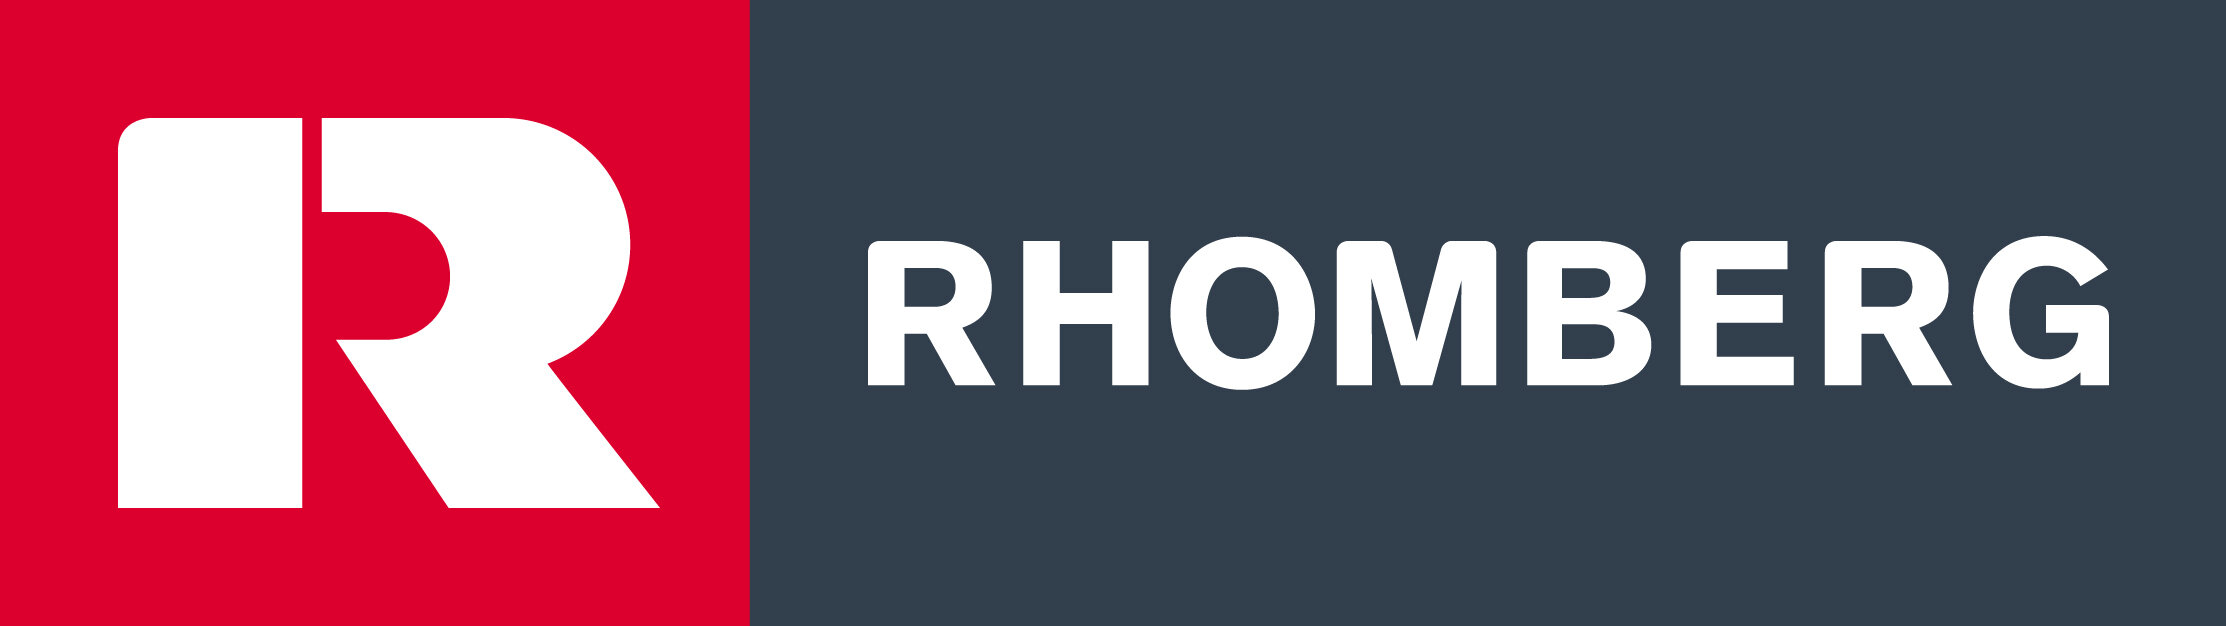 logo_rhomberg_quer_rgb.jpg